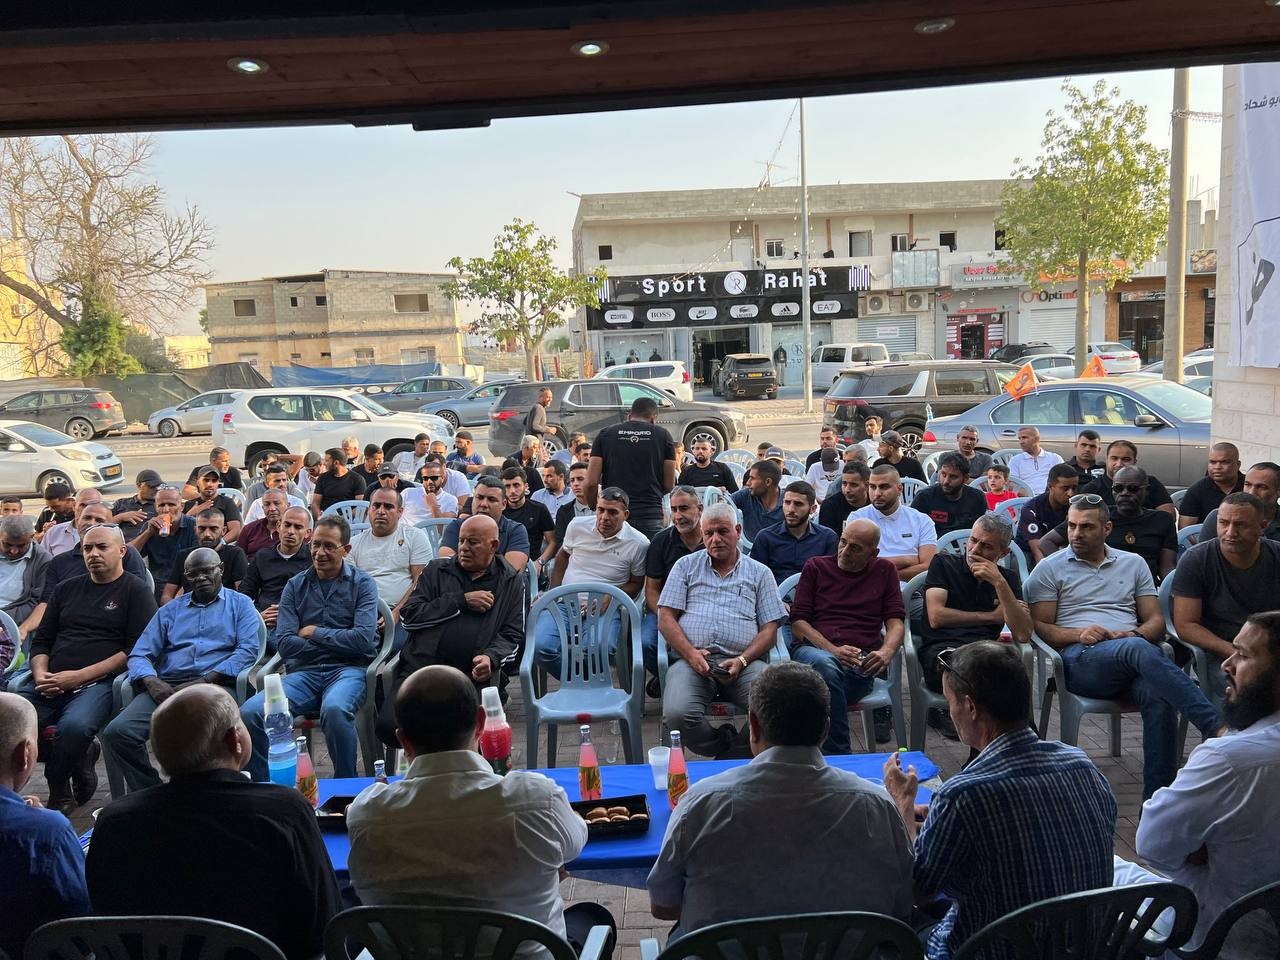 مهرجانات انتخابية حاشدة للتجمع في يافا ورهط: بضعة آلاف من الأصوات لاجتياز نسبة الحسم